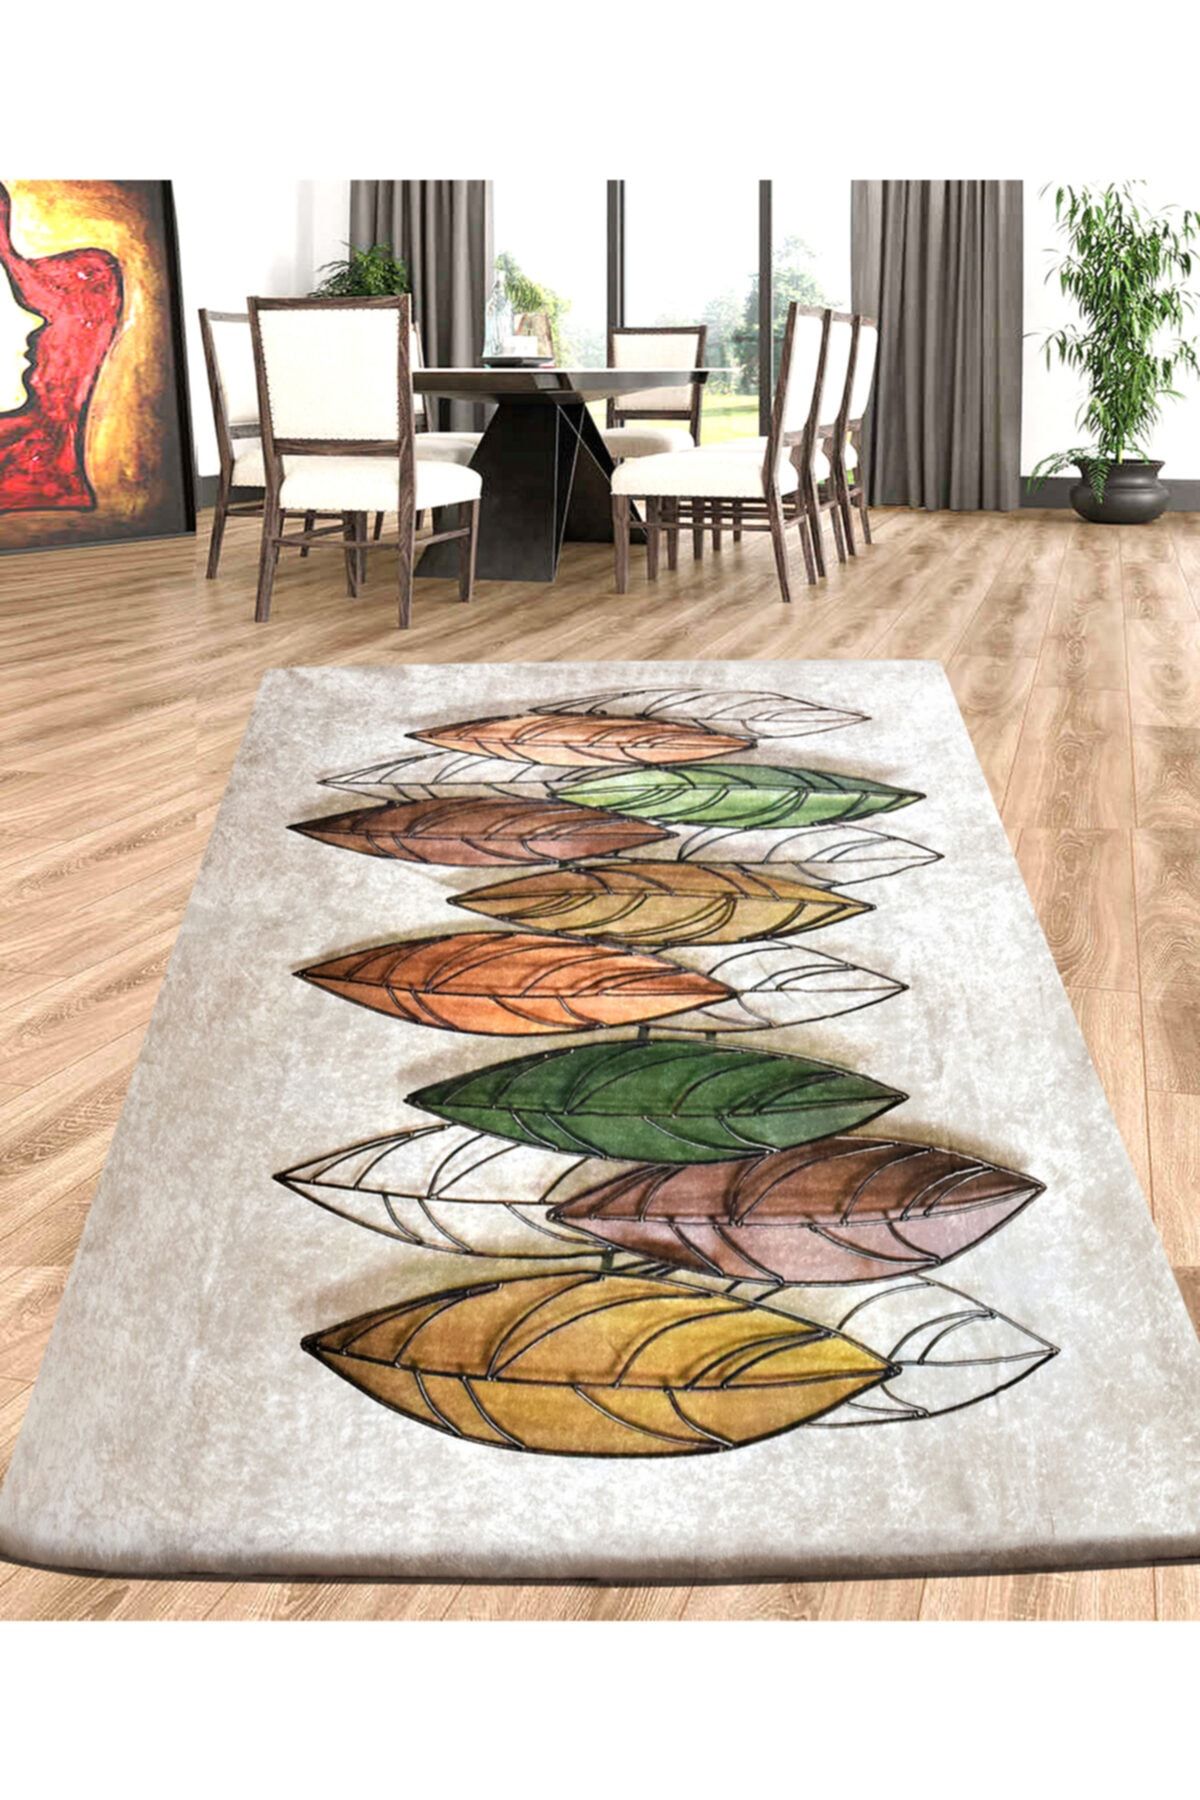 Nur Home Yaprak Cümbüşü 4m2, 5m2, 6m2 Dijital Baskı Mutfak, Salon Süngerli Kadife Lastikli Halı Örtüsü